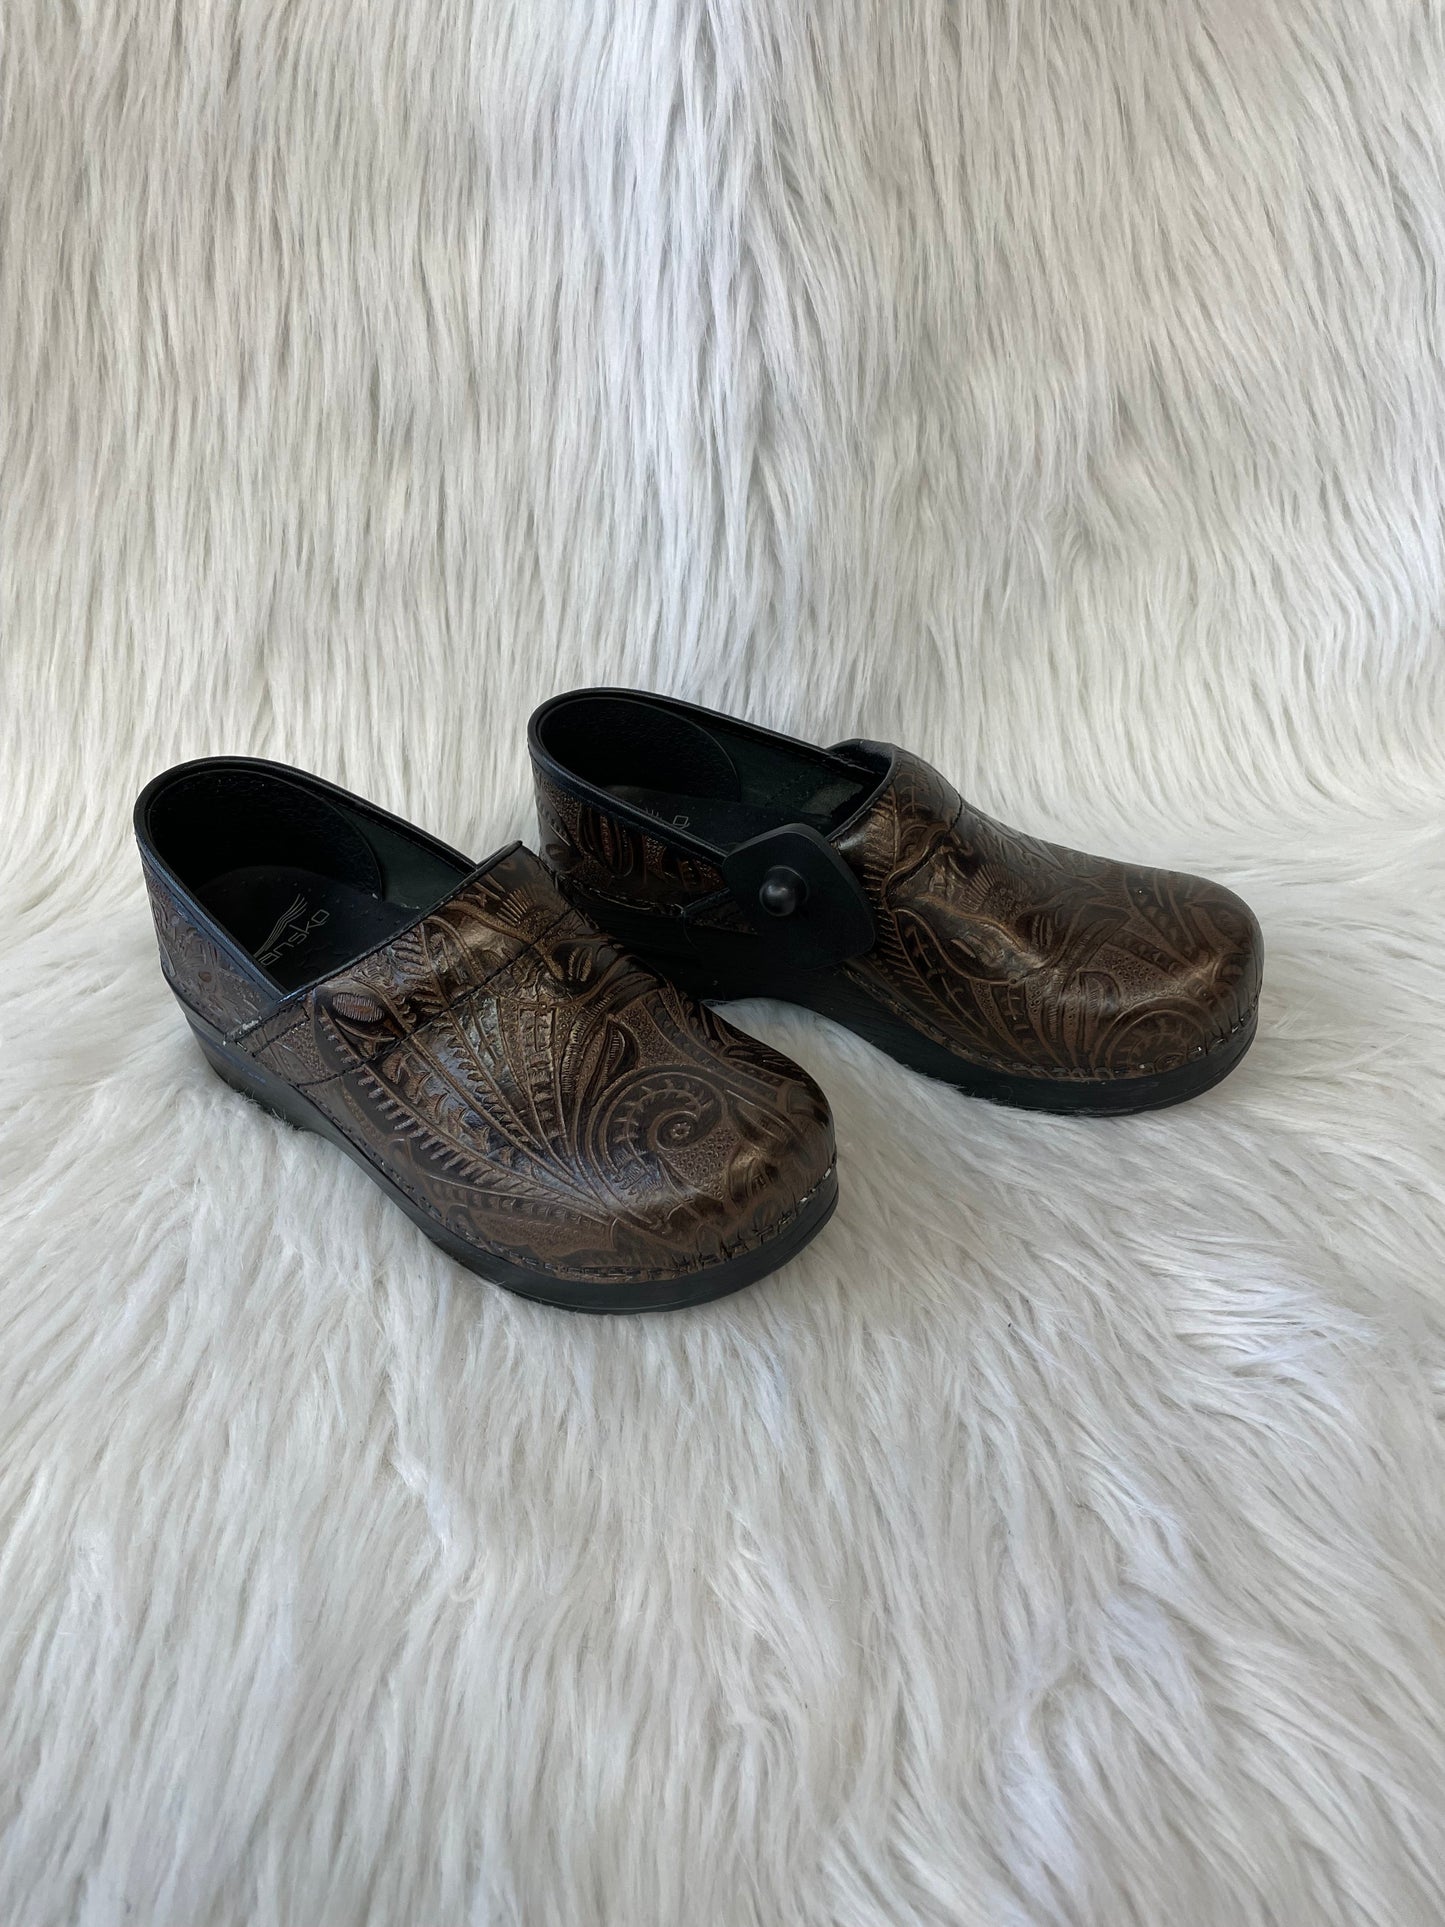 Brown Shoes Heels Wedge Dansko, Size 6.5